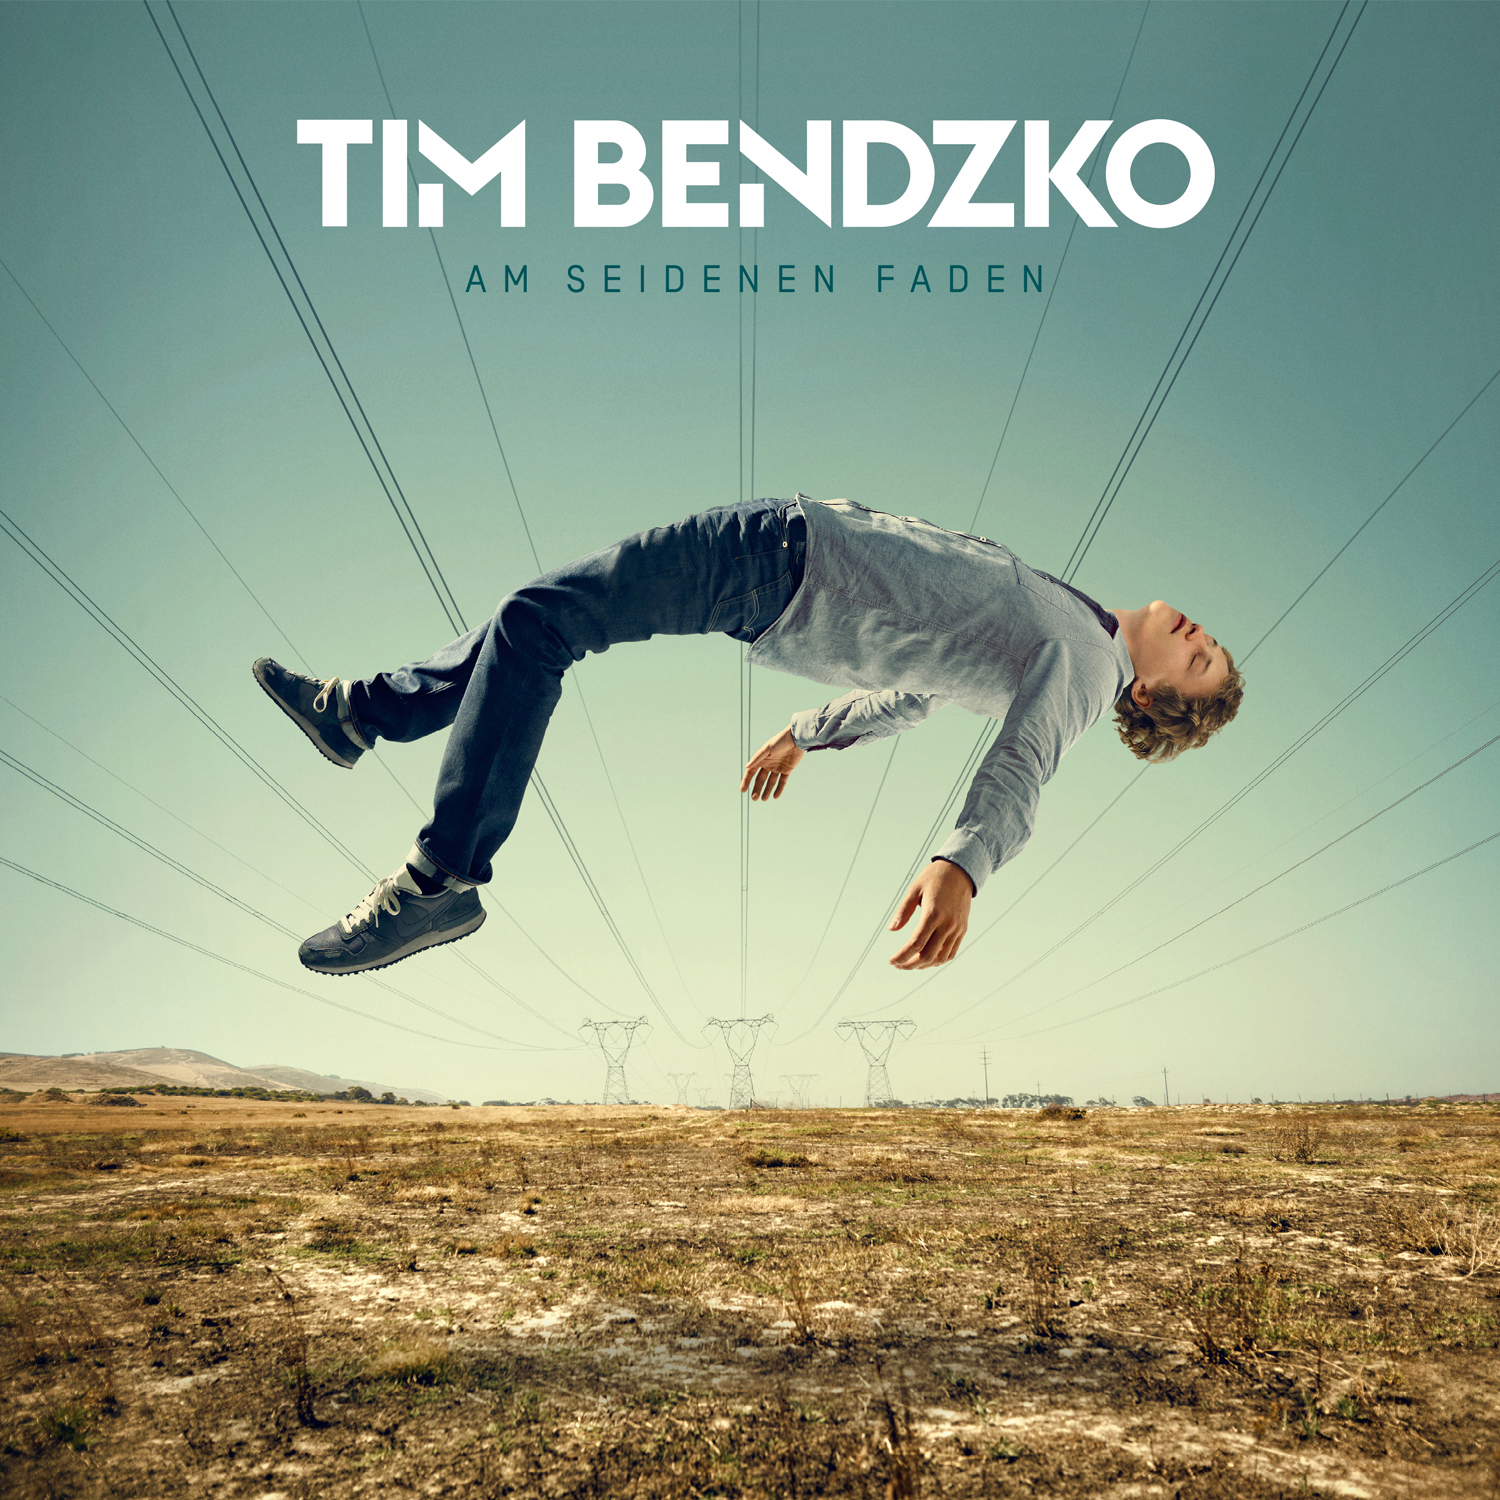 Tim Bendzko – “Am Seidenen Faden“